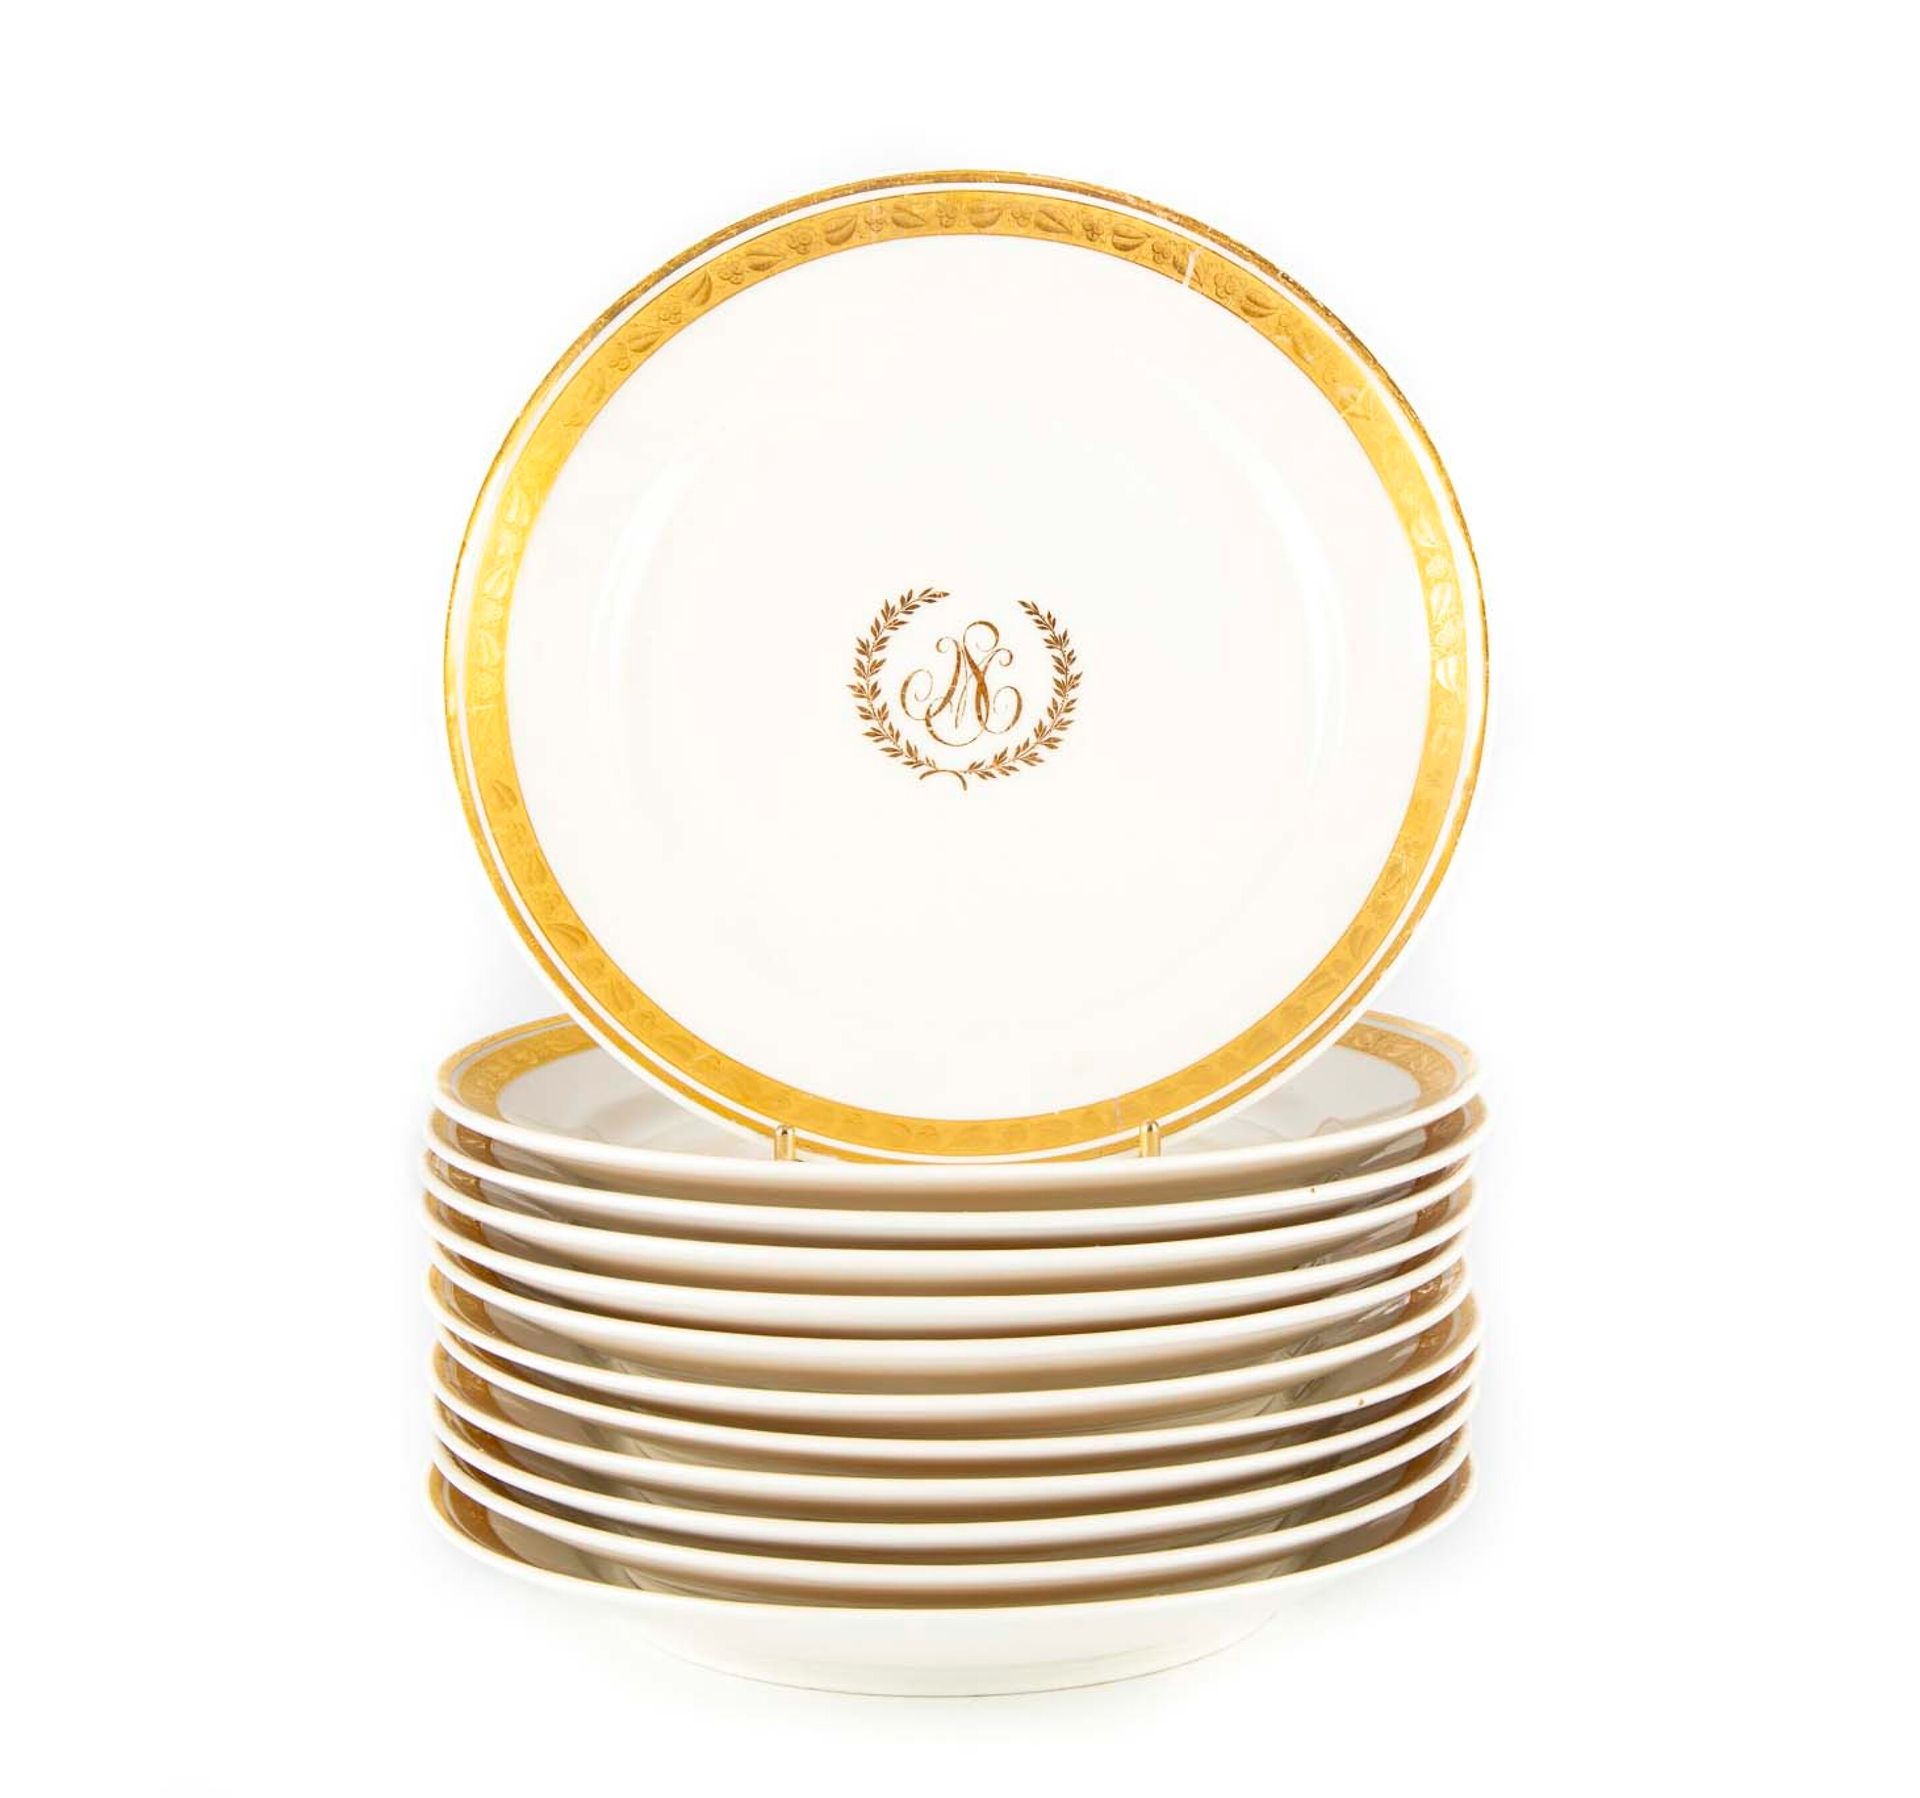 PARIS PARÍS

Conjunto de 12 platos de porcelana blanca con un borde dorado de ho&hellip;